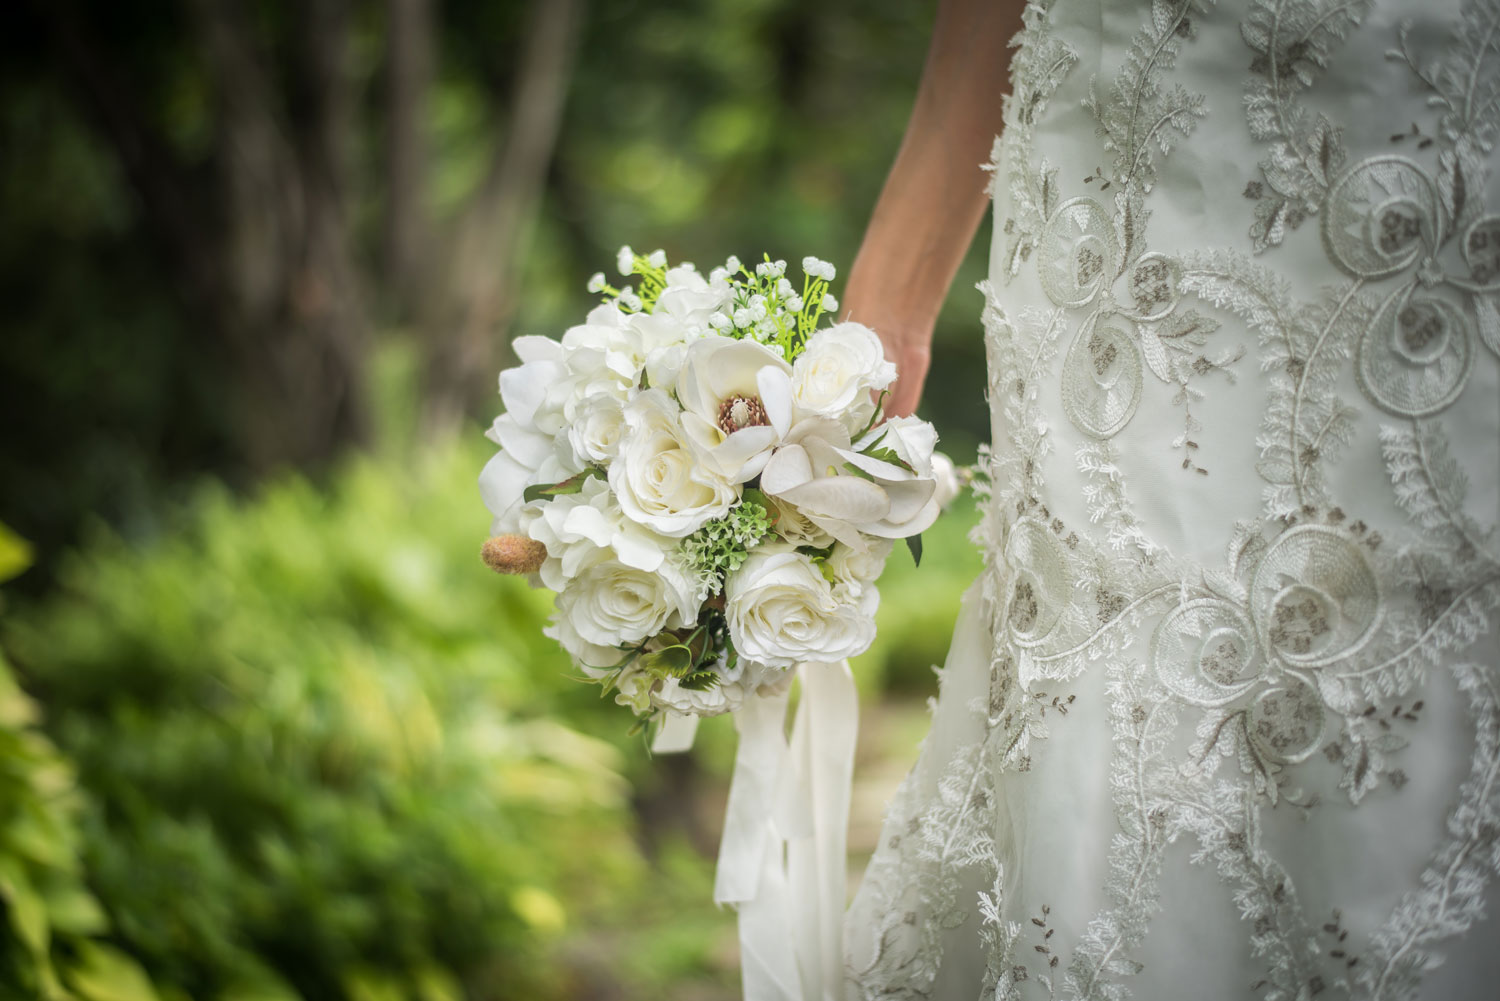 Bouquet Sposa Tradizione.Bouquet Sposa Le Tradizioni Nel Mondo I Do In Italy